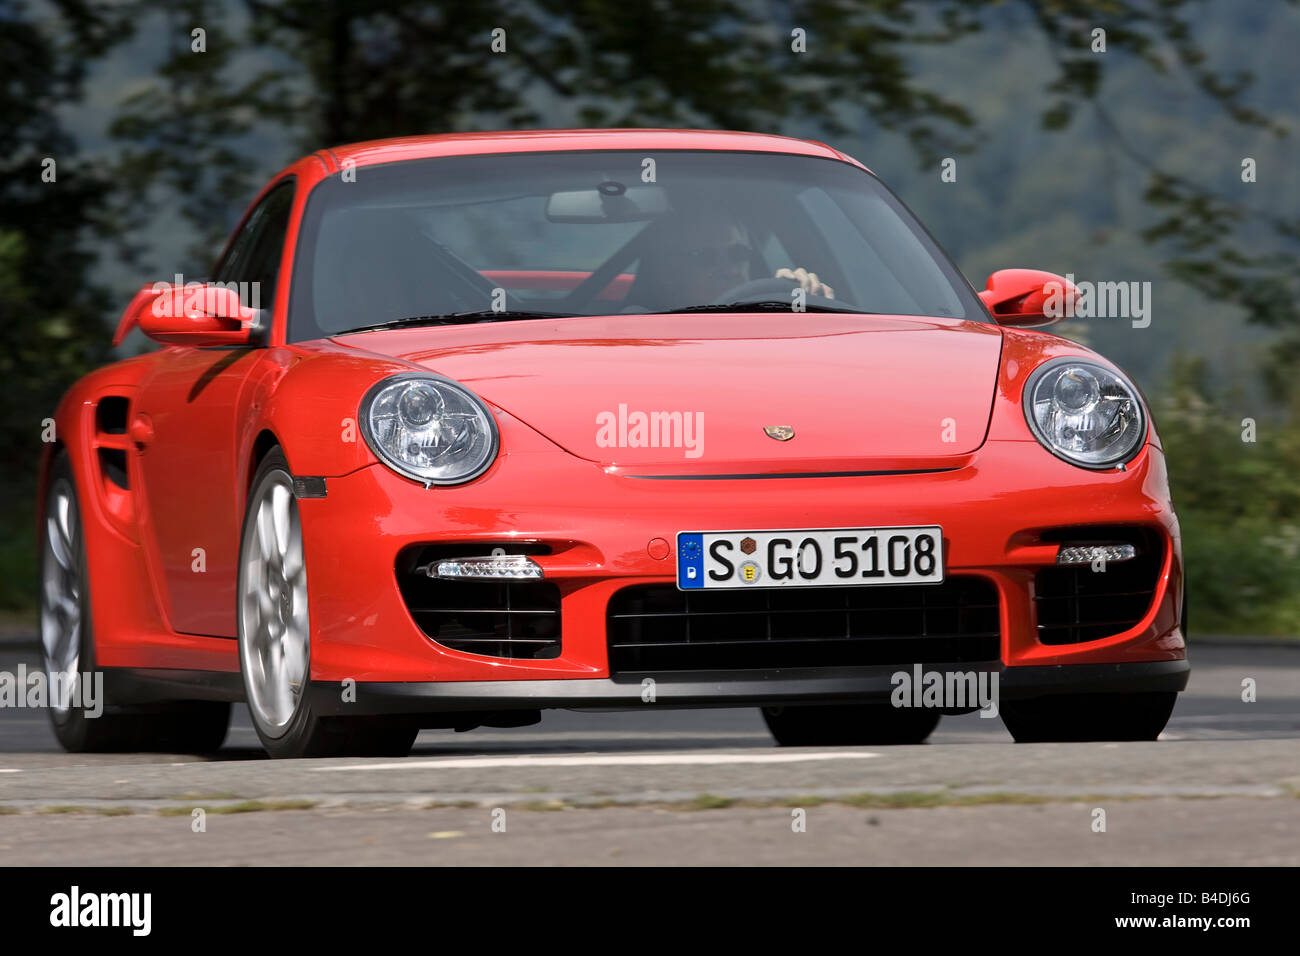 Porsche 911 GT2, l'année de modèle 2007-, rouge, la conduite, la diagonale de l'avant, vue frontale, country road Banque D'Images